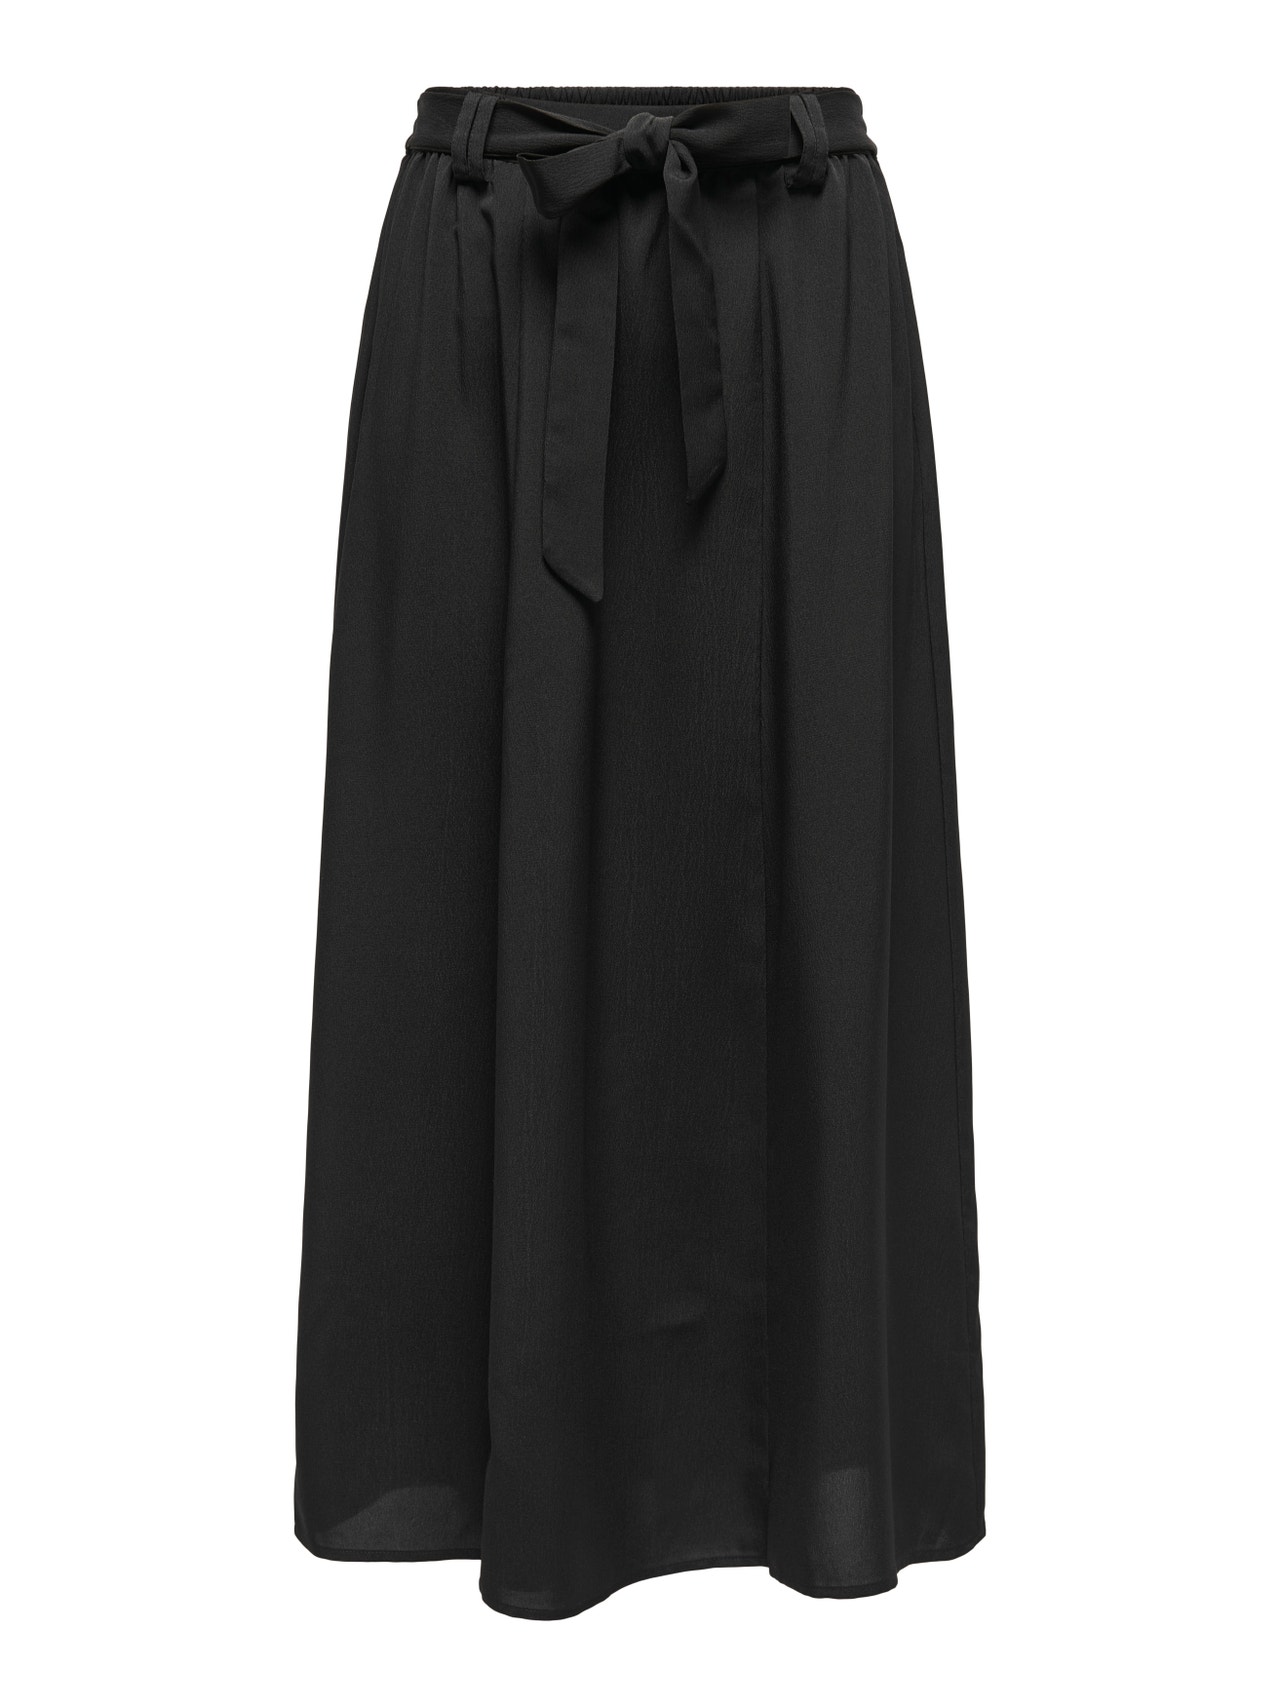 ONLY Maxi nederdel med bælte -Black - 15335565